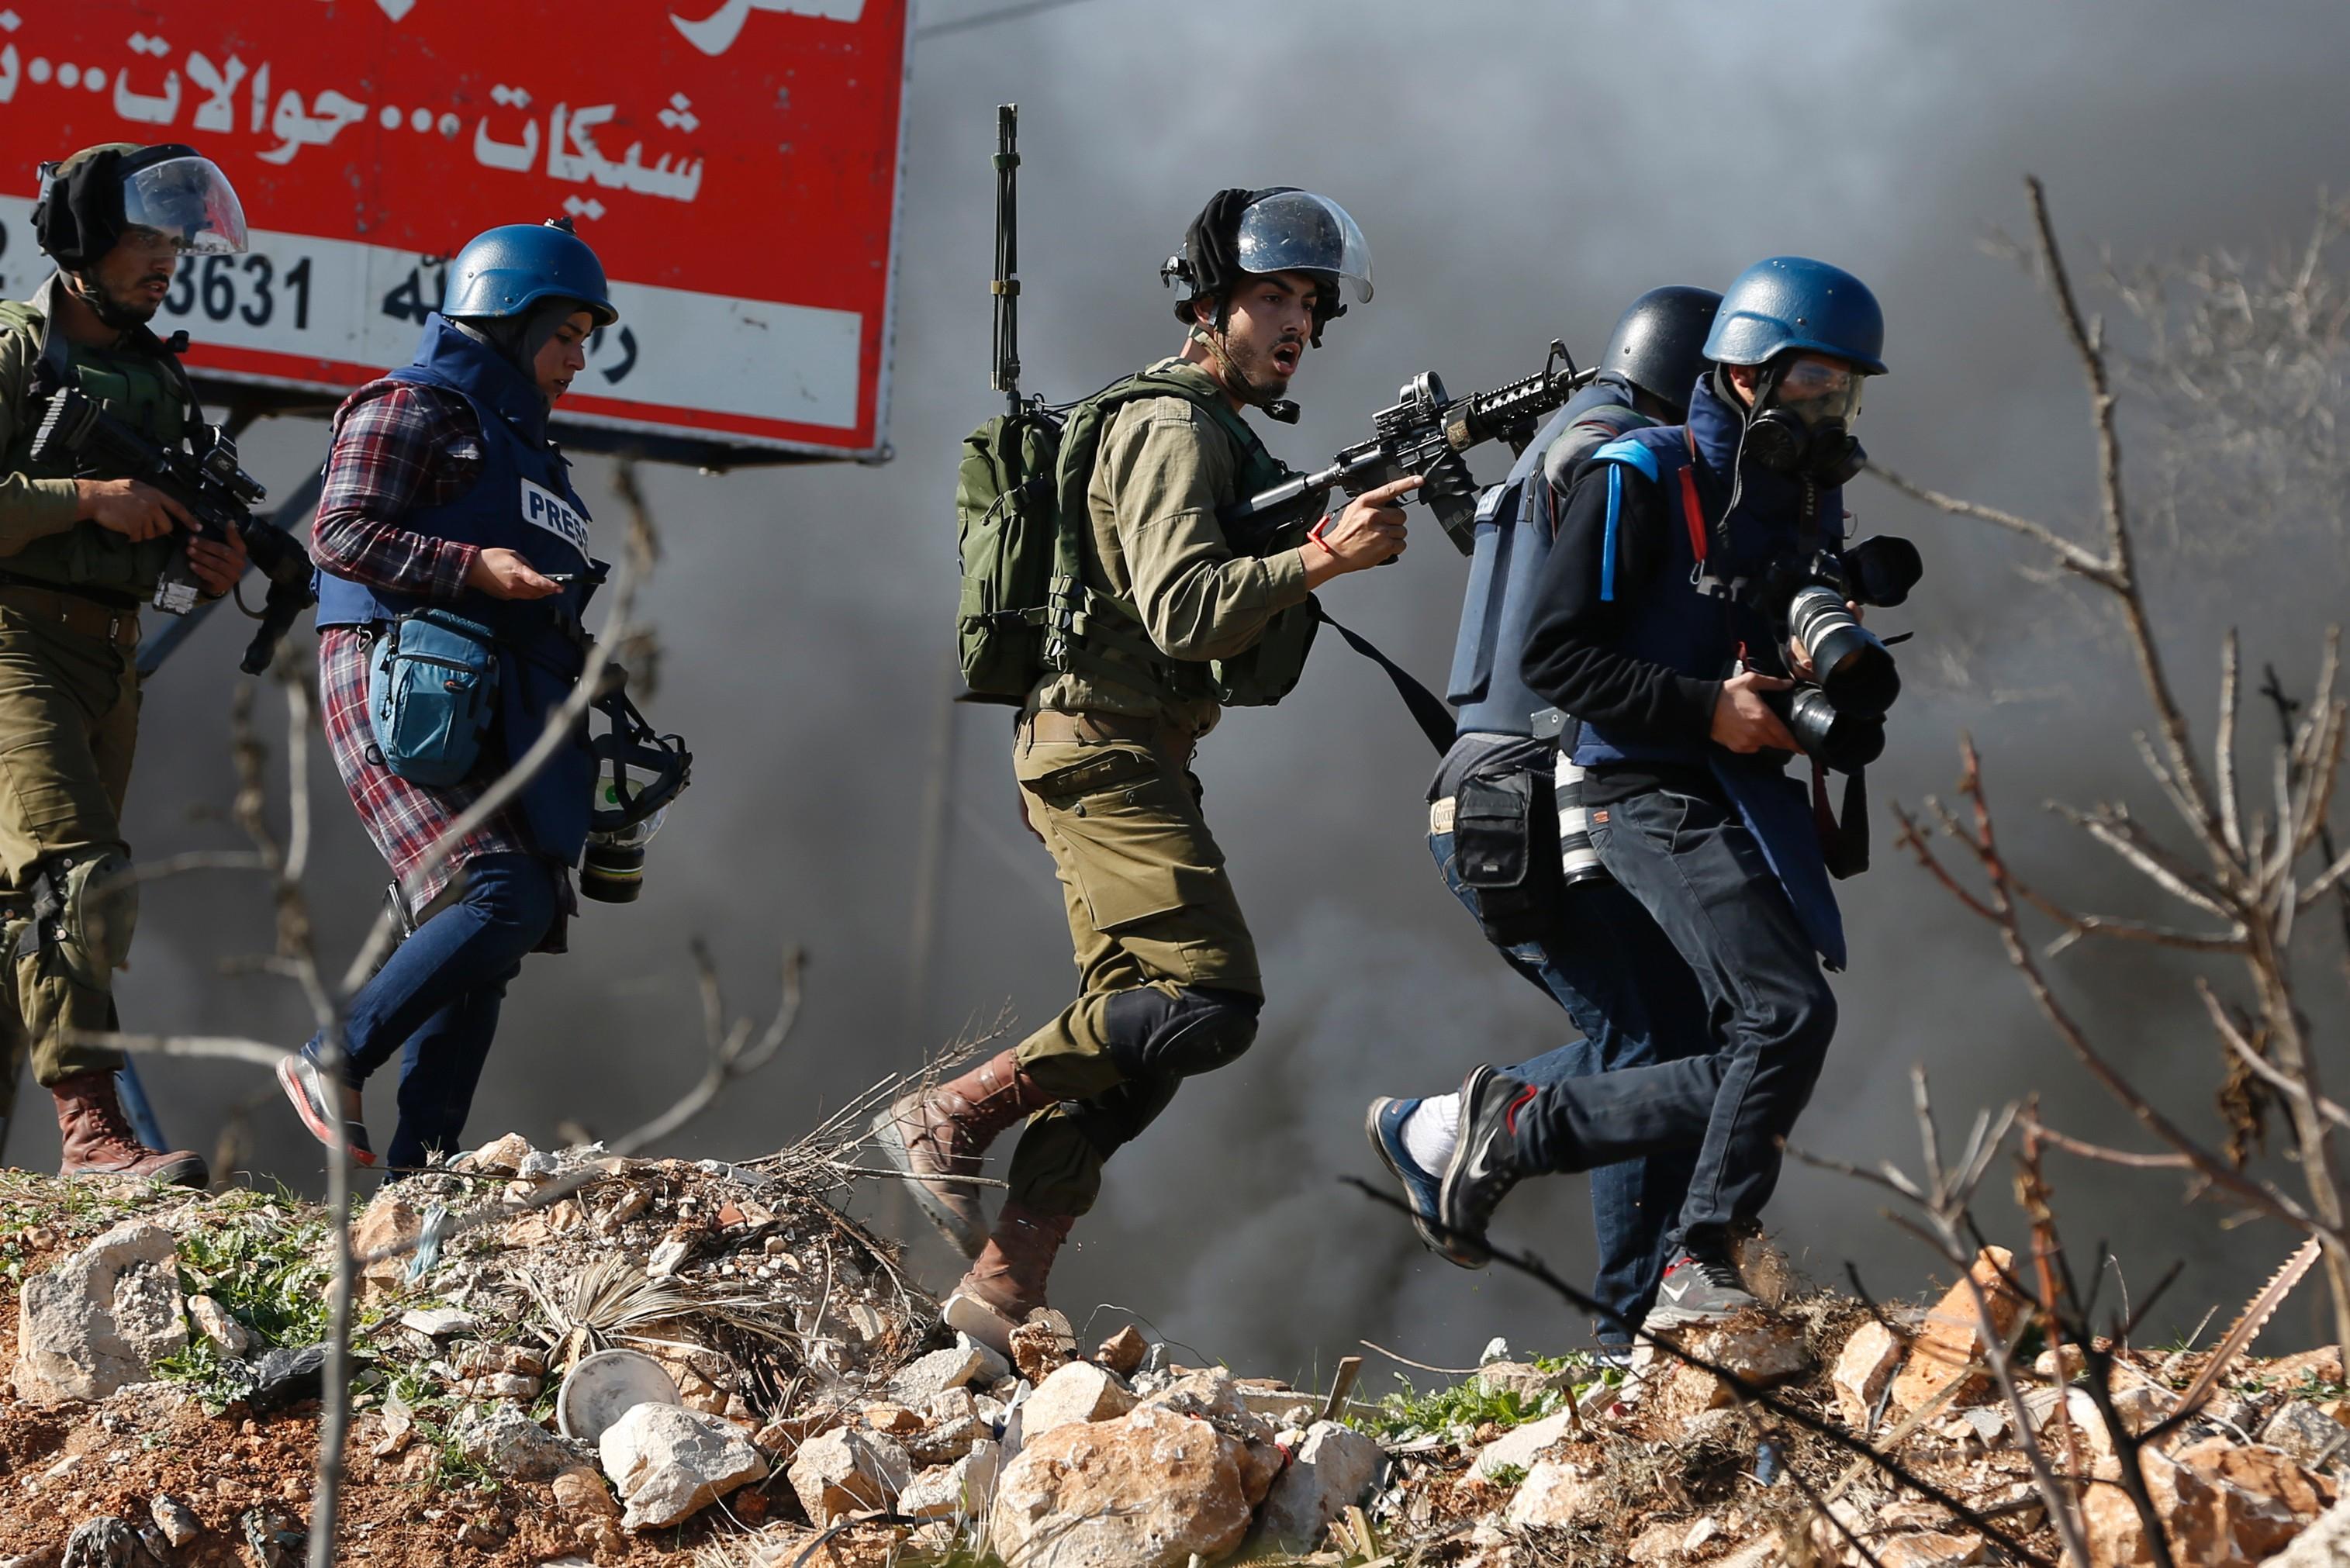 Journalister lever farligt i krigsområden. Här motar en israelisk soldat bort journalister under en sammanstötning med palestinska ungdomar på Västbanken. (Foto: Abbas momani/AFP/Getty Images)